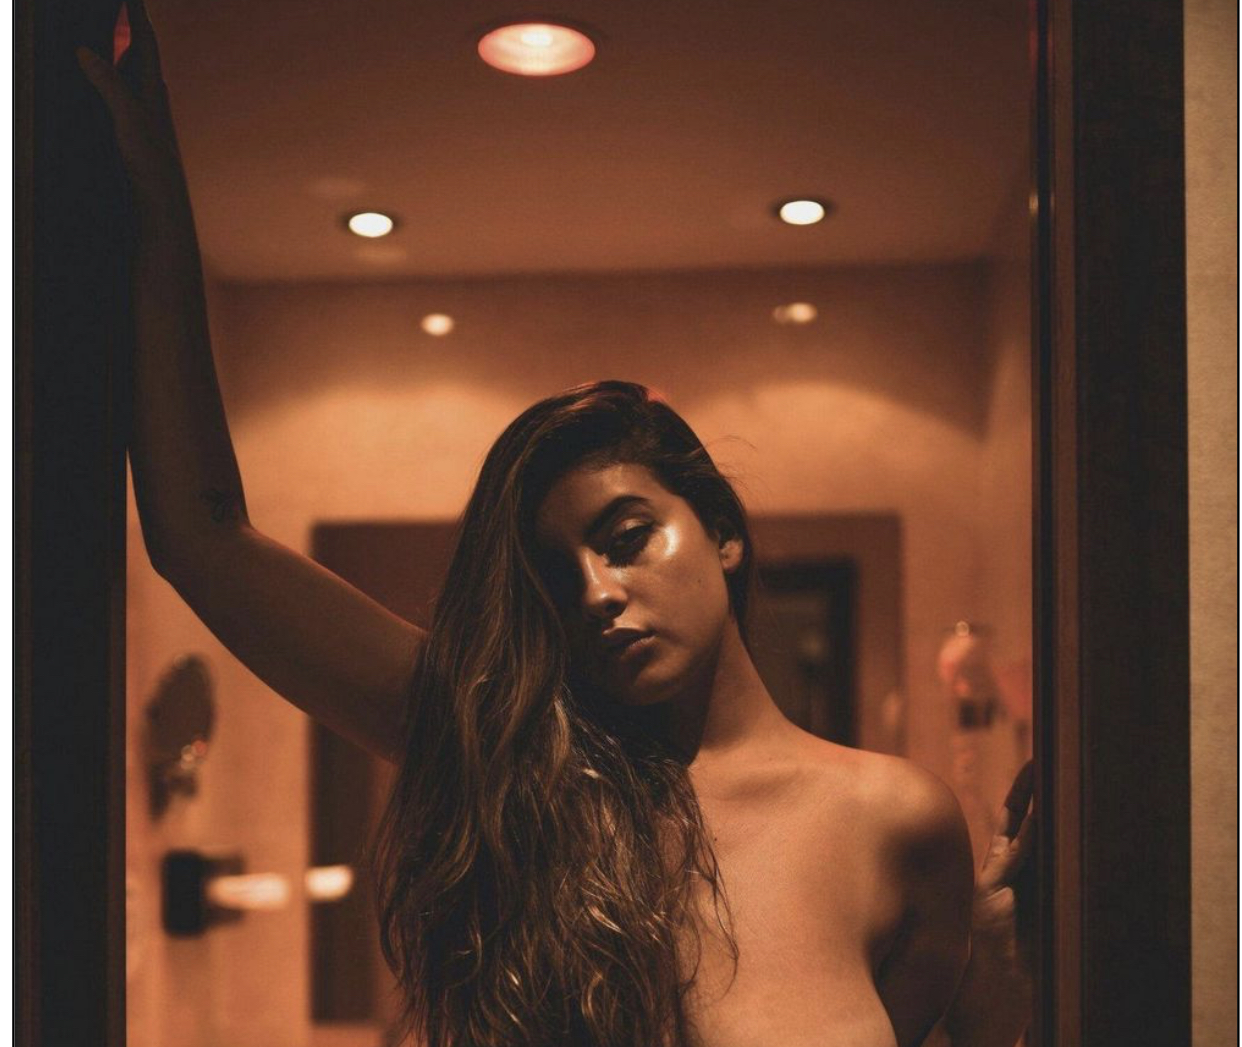 Η Judit Guerra σε γυμνή φωτογράφηση!